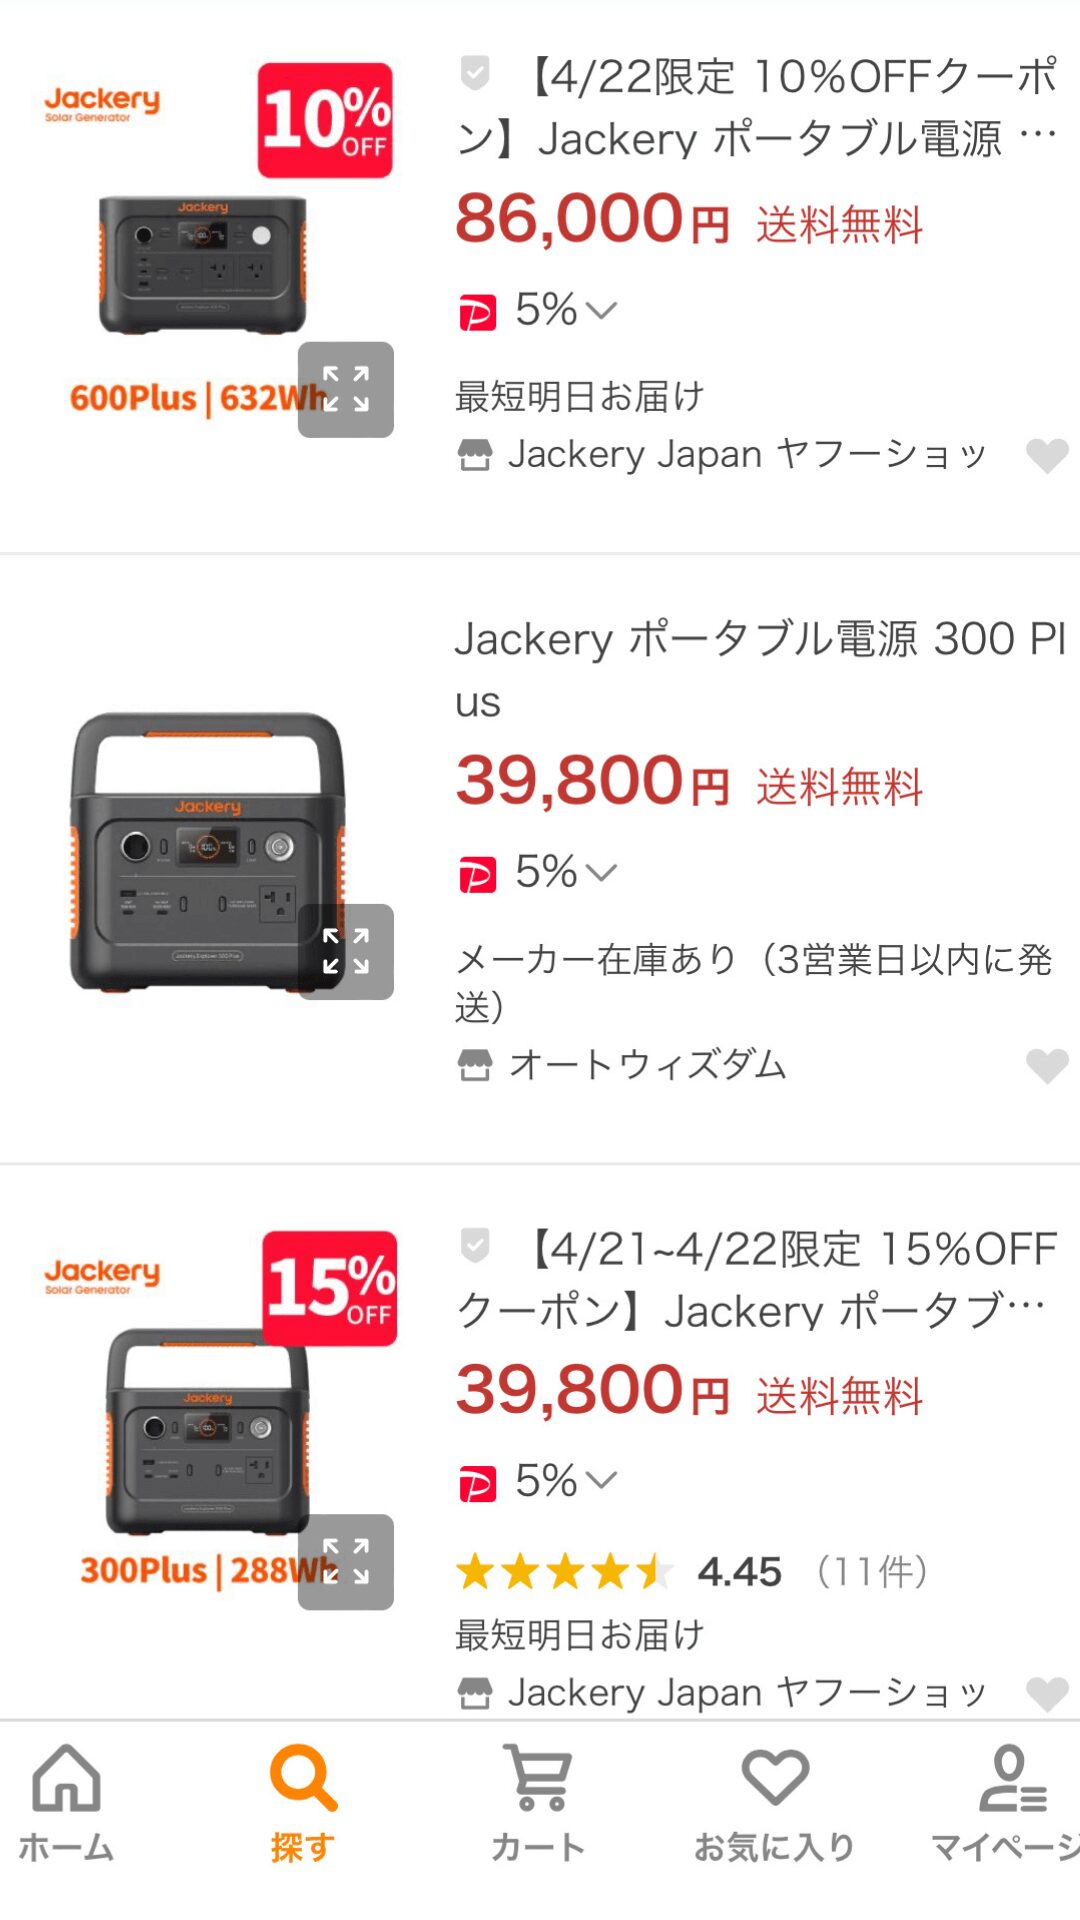 Jackery-600-plus-Yahoo!